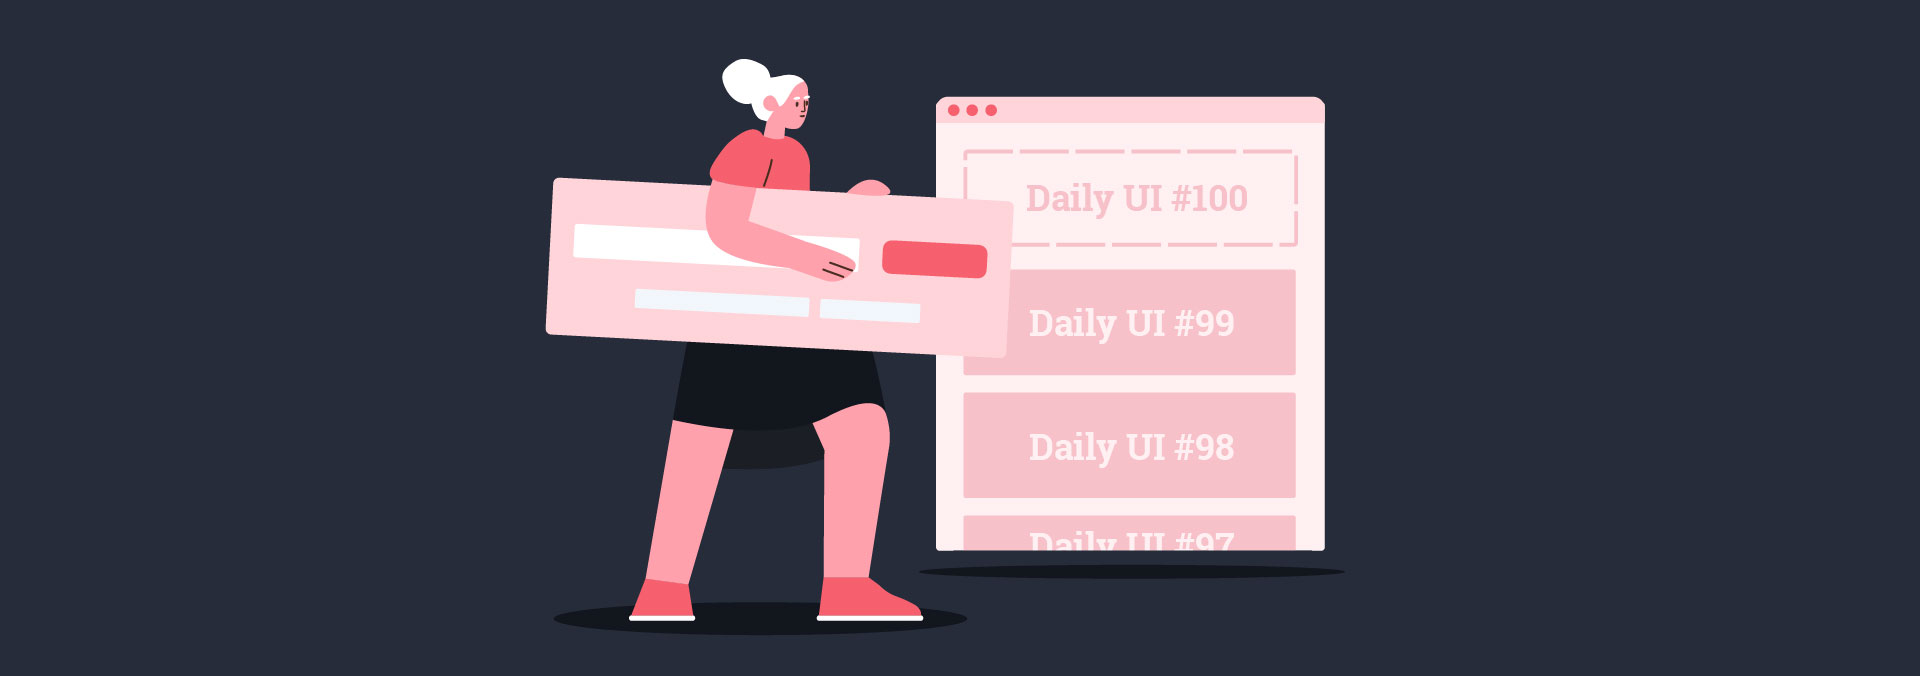 Daily UI 100: accettare la sfida oppure no?